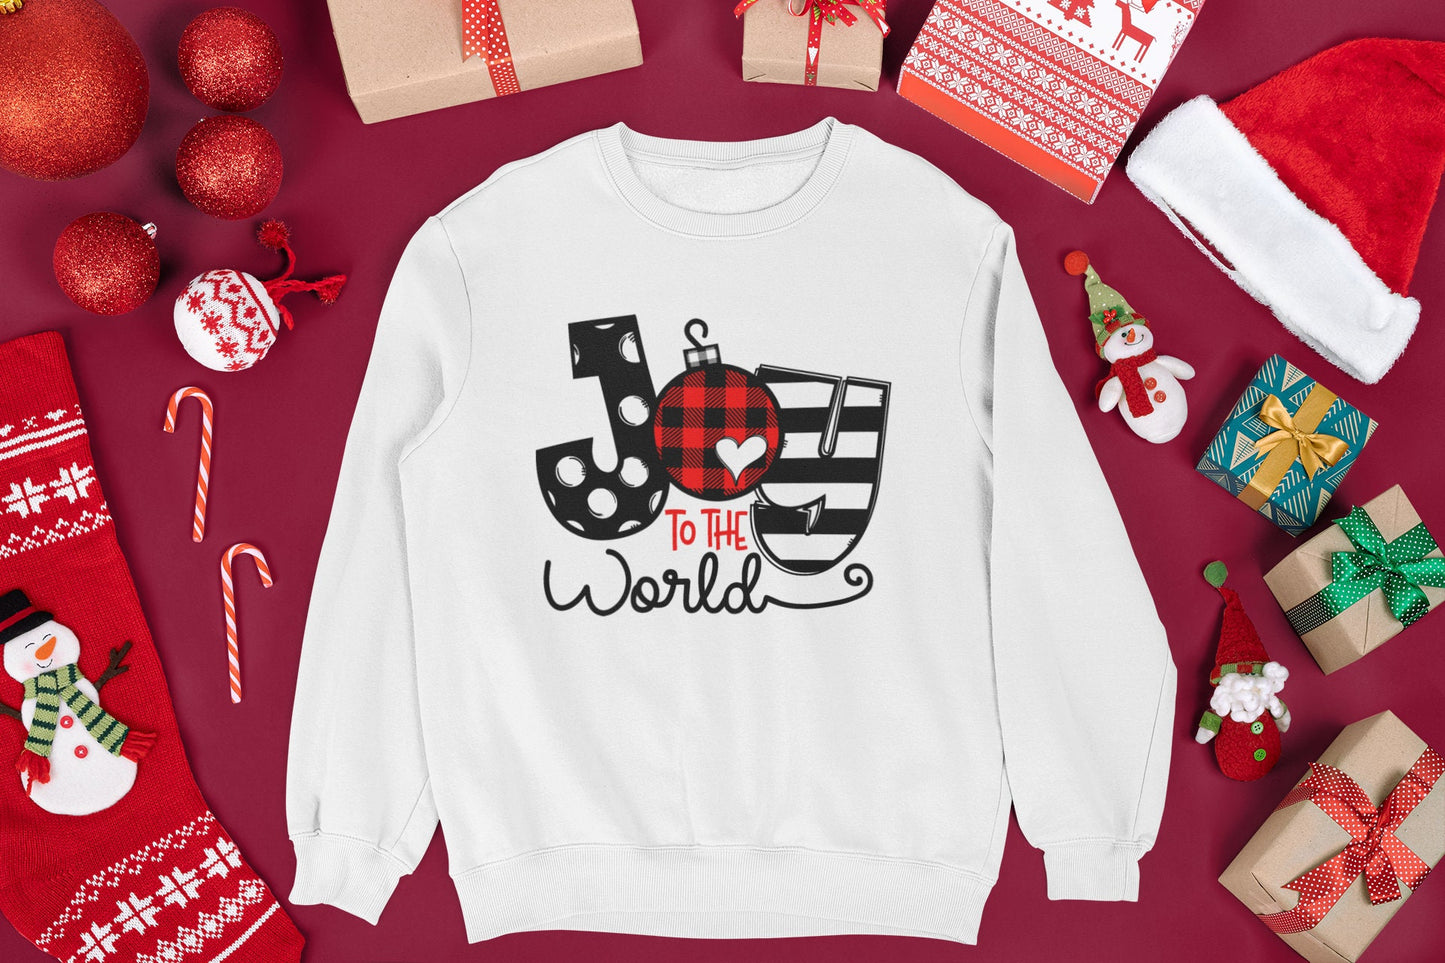 Joy to the World Sweatshirt, Christmas Sweatshirt, Holiday Sweatshirt,  Joy Sweatshirt, Cute Graphic Sweatshirt